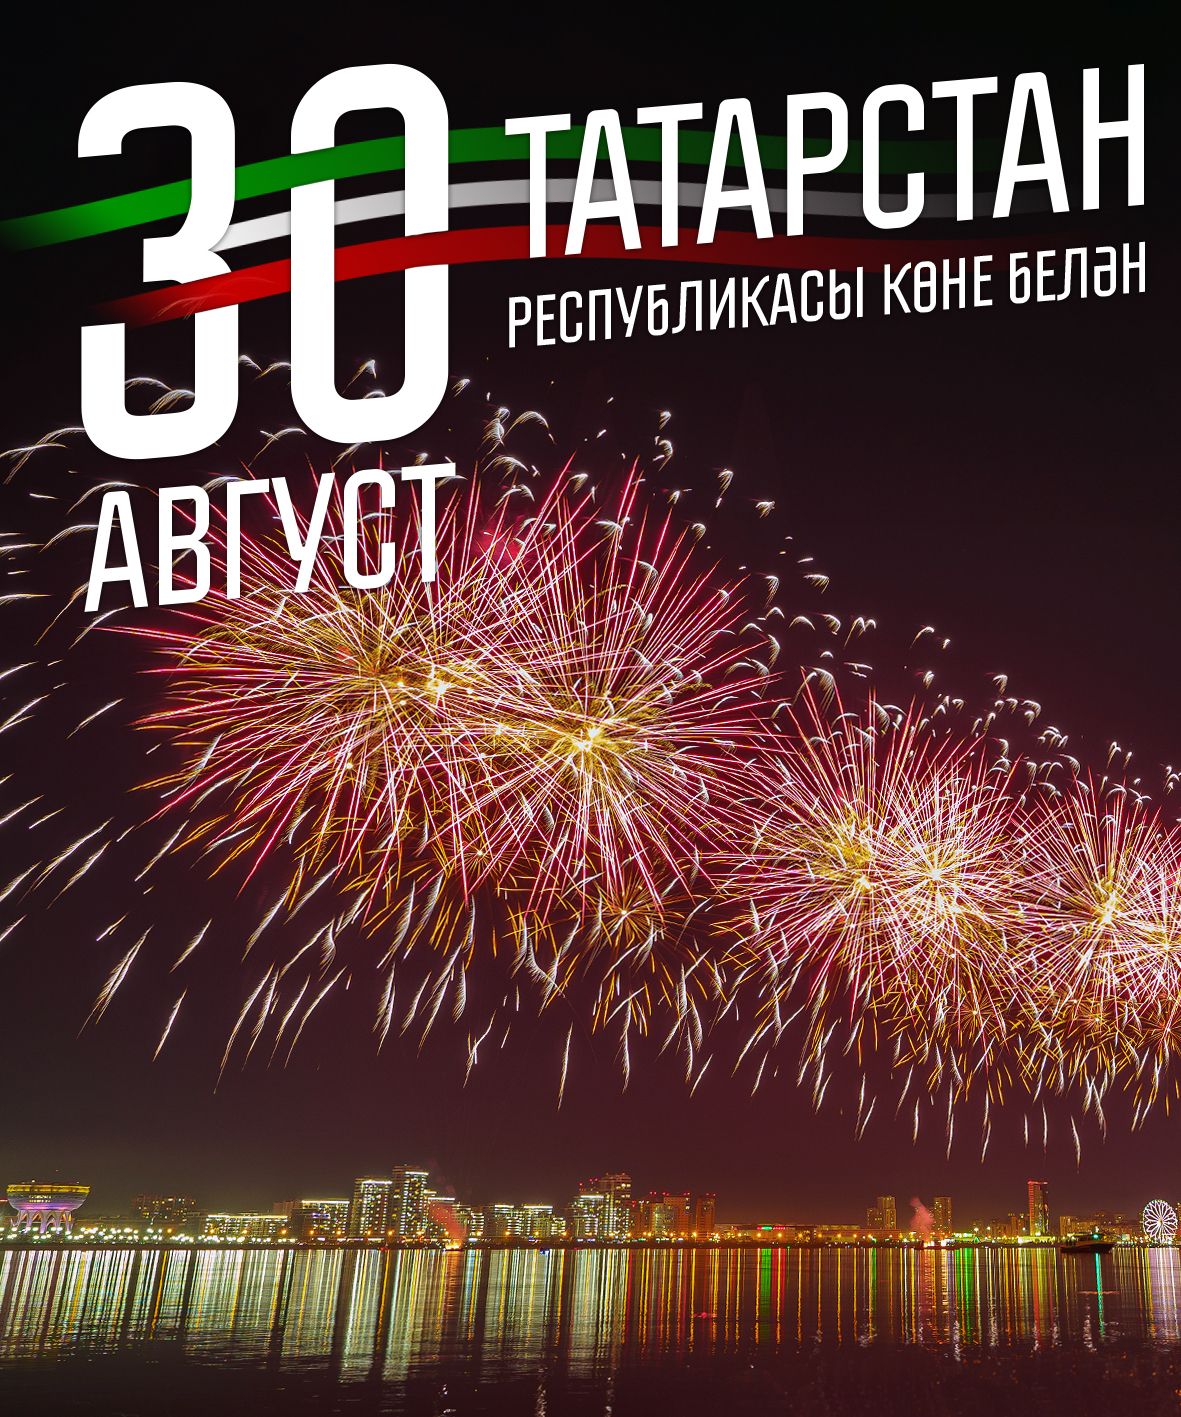 30 август – Татарстан Республикасы көне